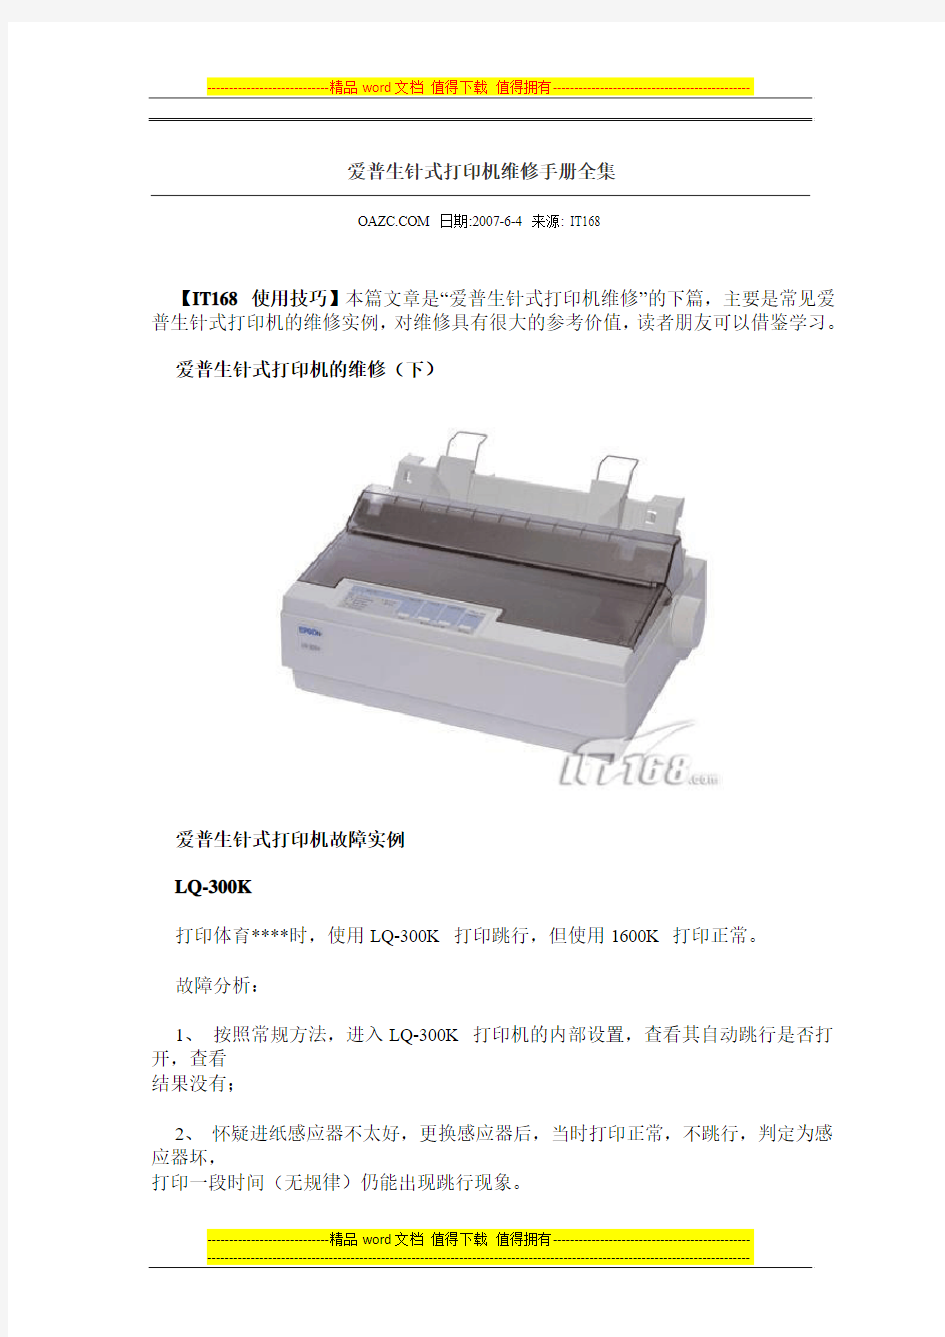 爱普生针式打印机维修手册全集